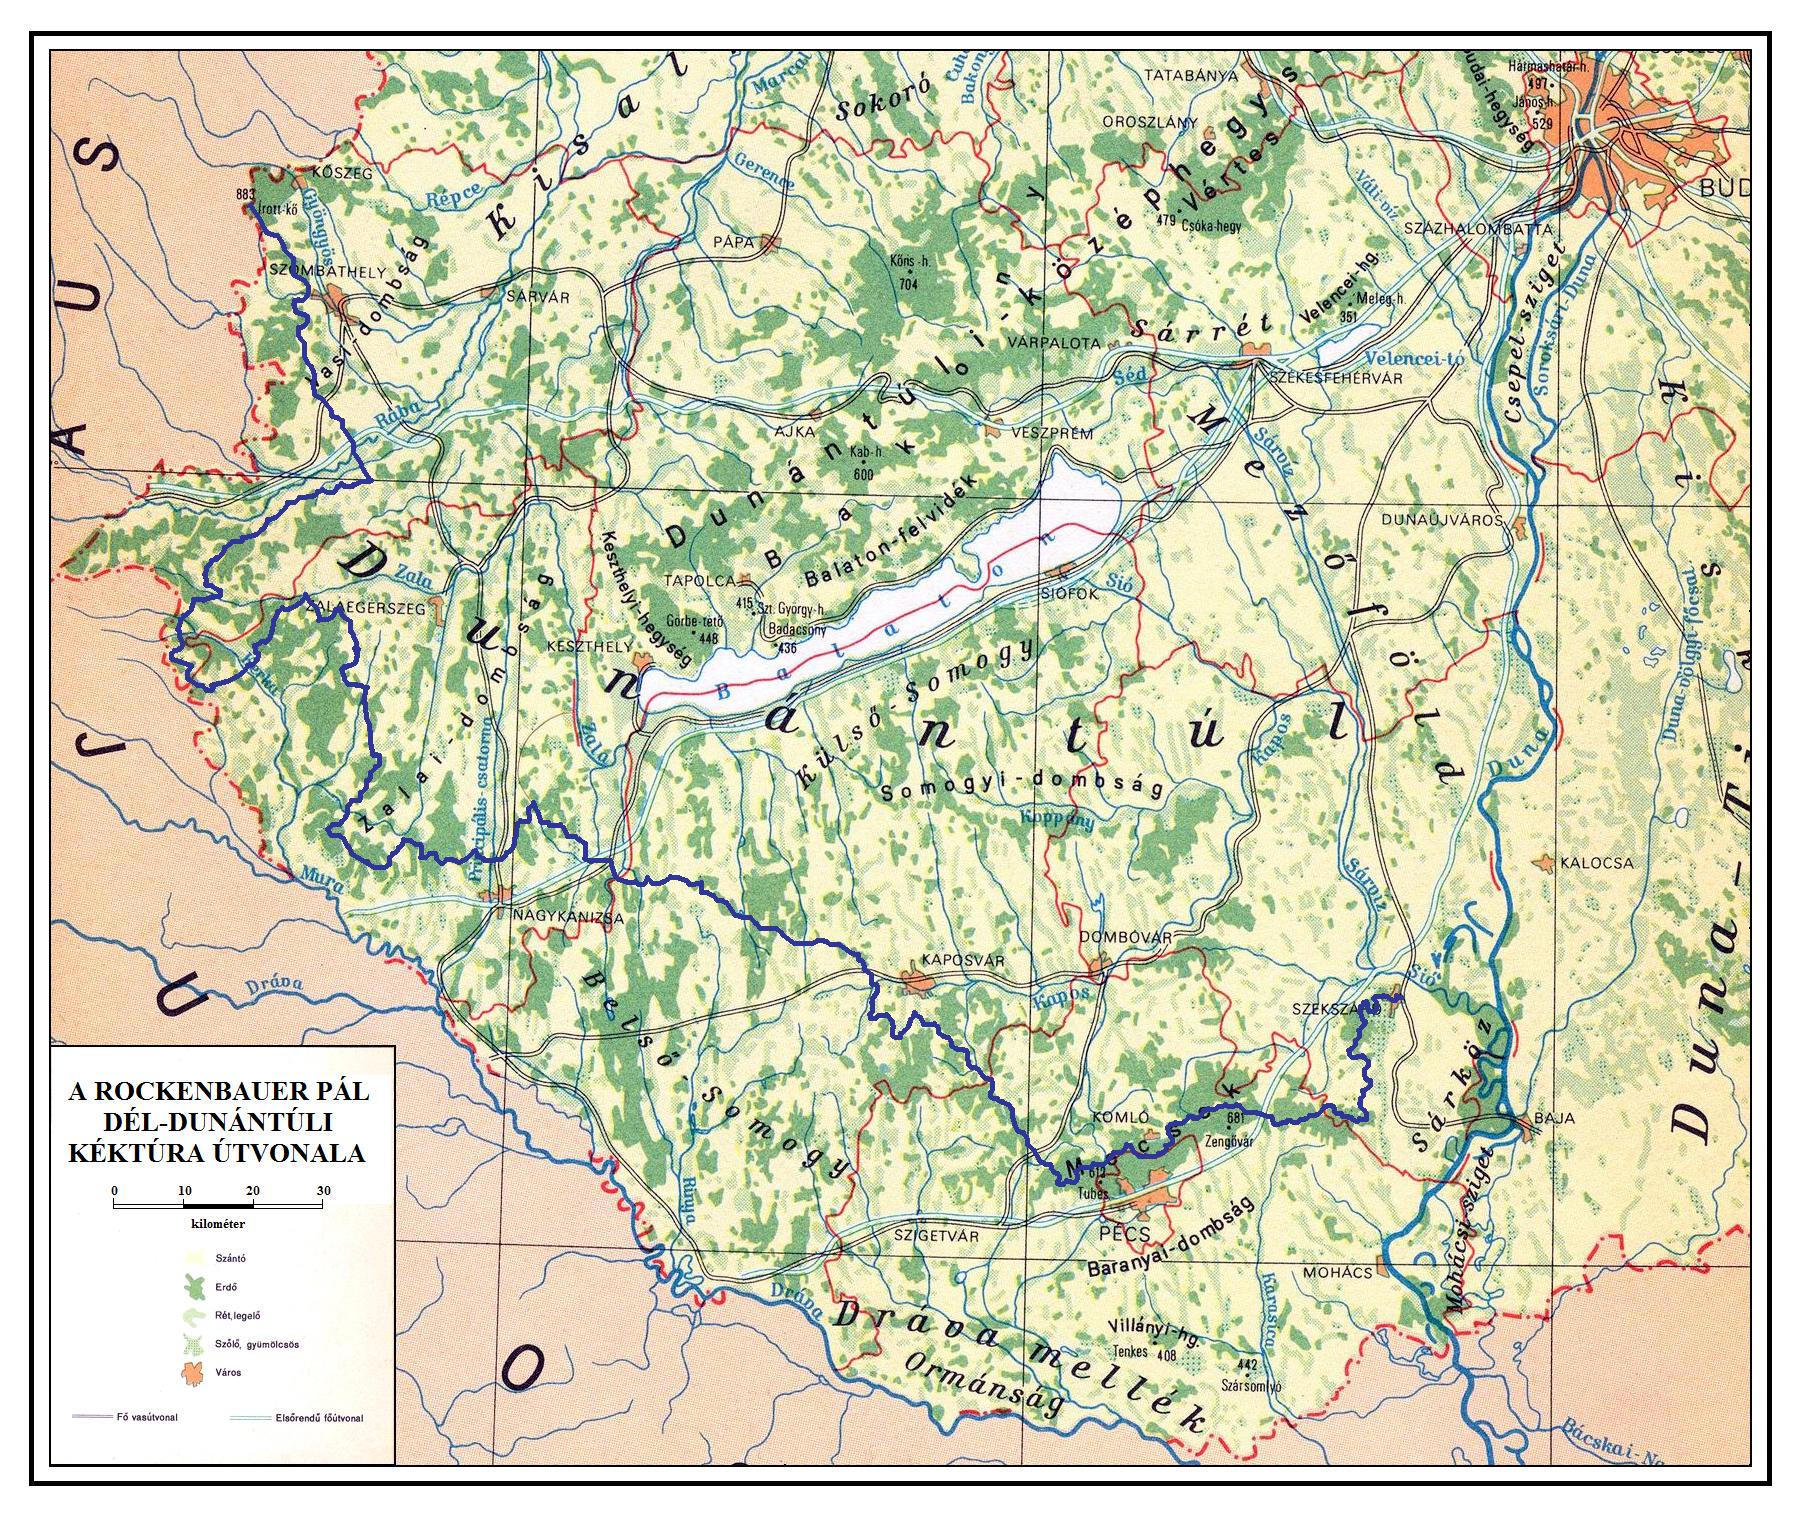 magyarország dunántúl térkép KÉKTÚRA HONLAP   A Rockenbauer Pál Dél dunántúli Kéktúra bemutatása magyarország dunántúl térkép